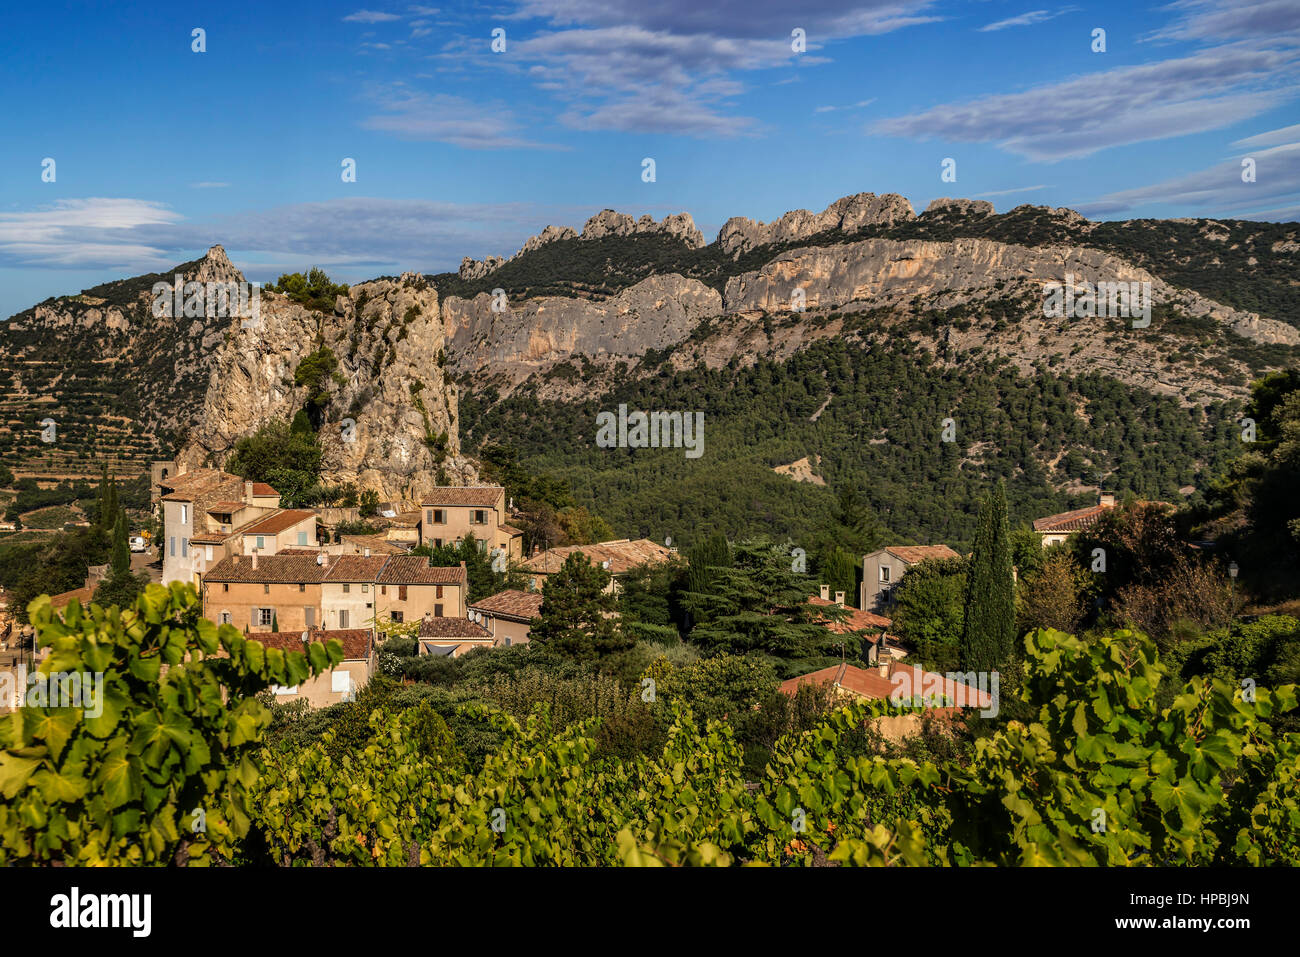 Viniculture, La Roque Alric, Montmirail Lace, Vaucluse, France, Europe Stock Photo